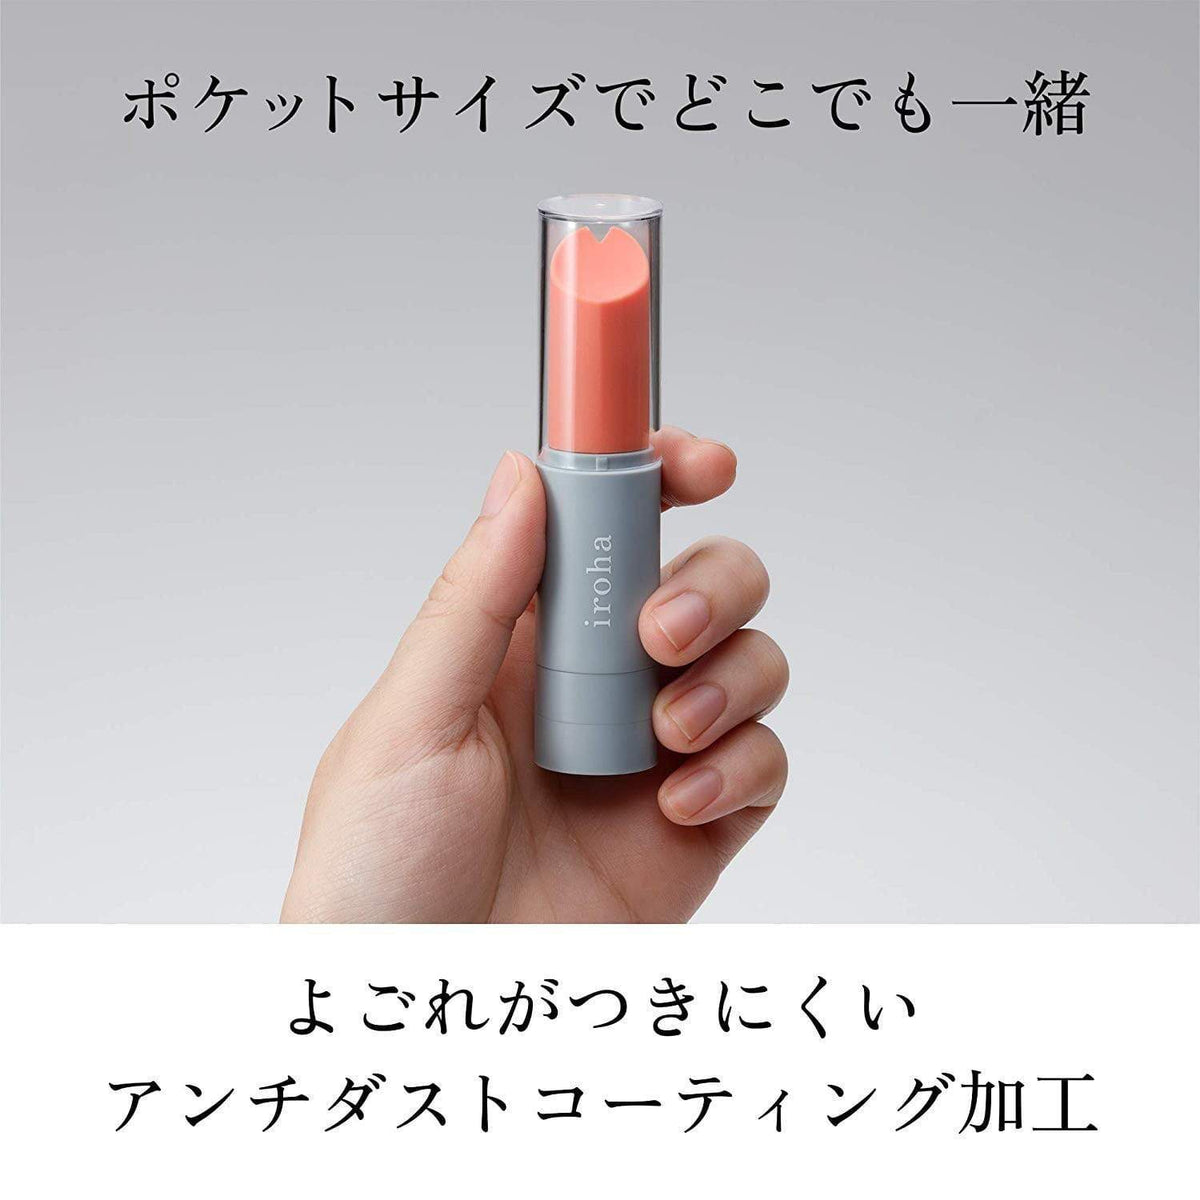 Tenga - Iroha Stick Discreet Vibrator CherryAffairs